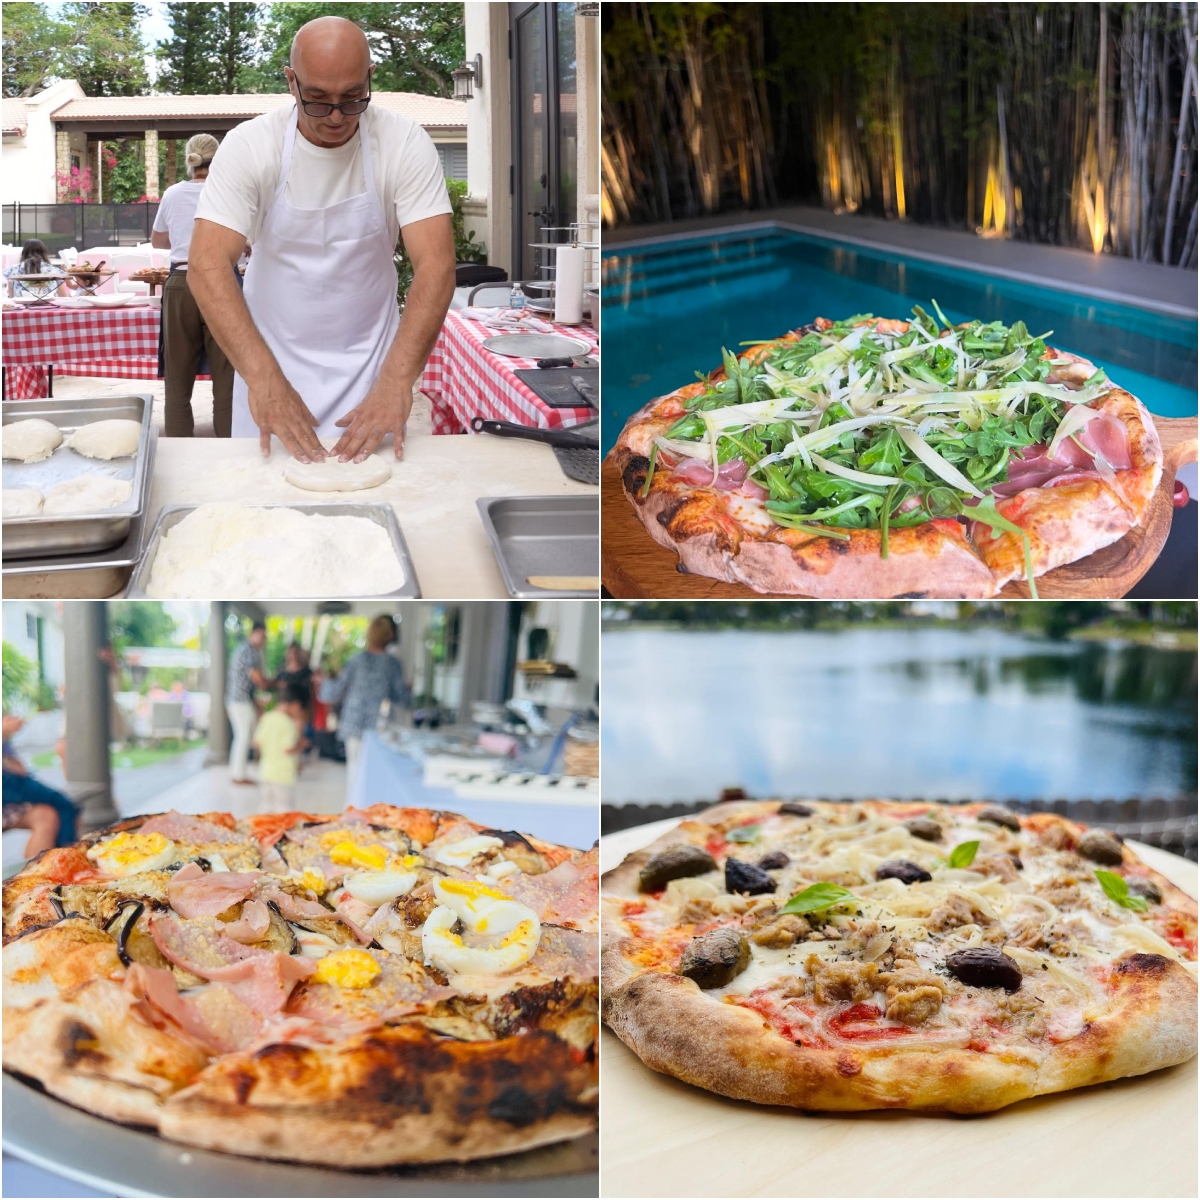 Pizza Station Bartolomeo Private Chef Italian Catering in Miami